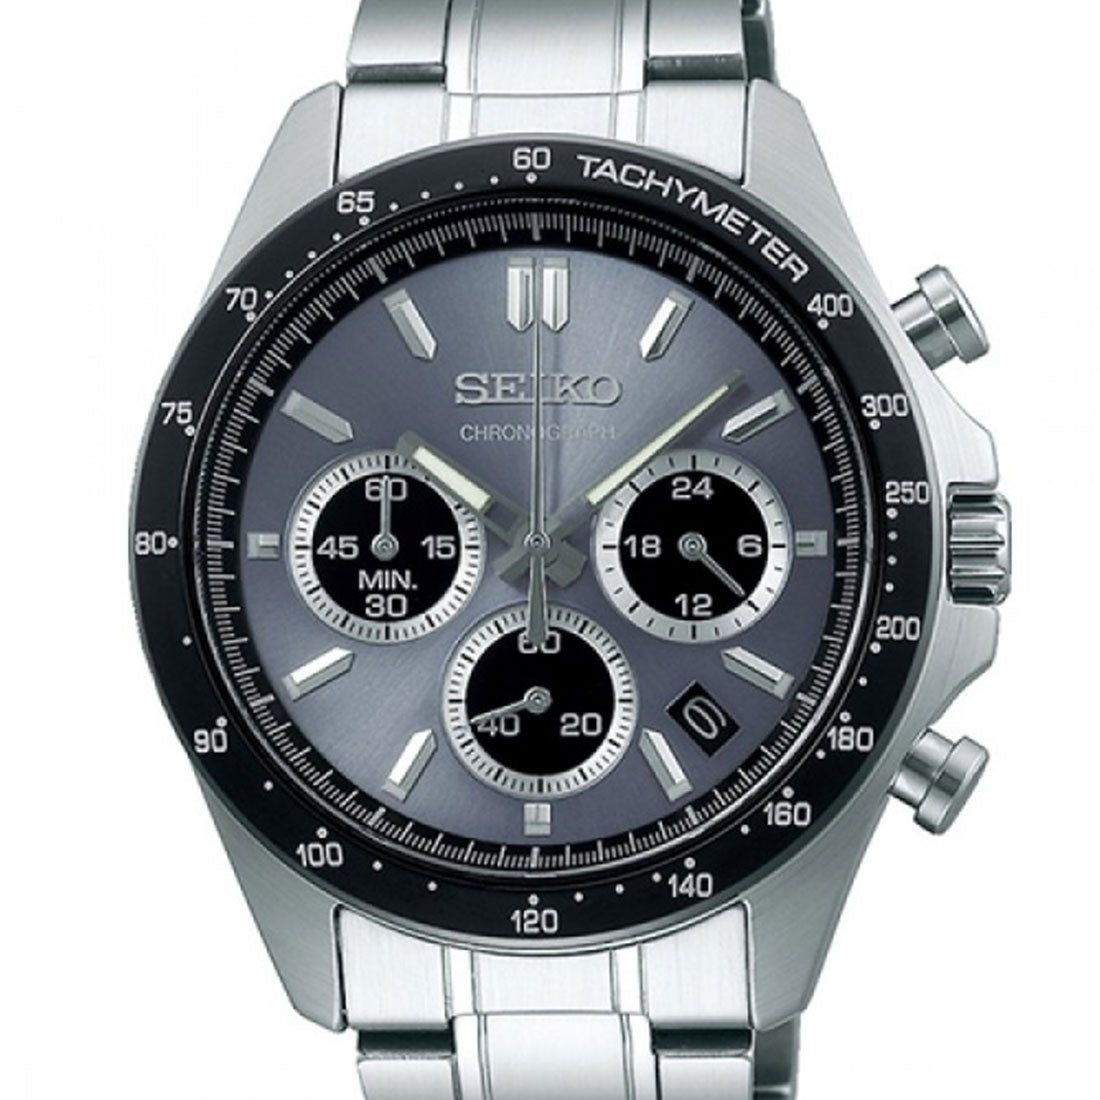 Seiko Spirit SBTR027 JDM Selection Grey Dial Chronograph Quartz Stainless Steel Watch -Seiko